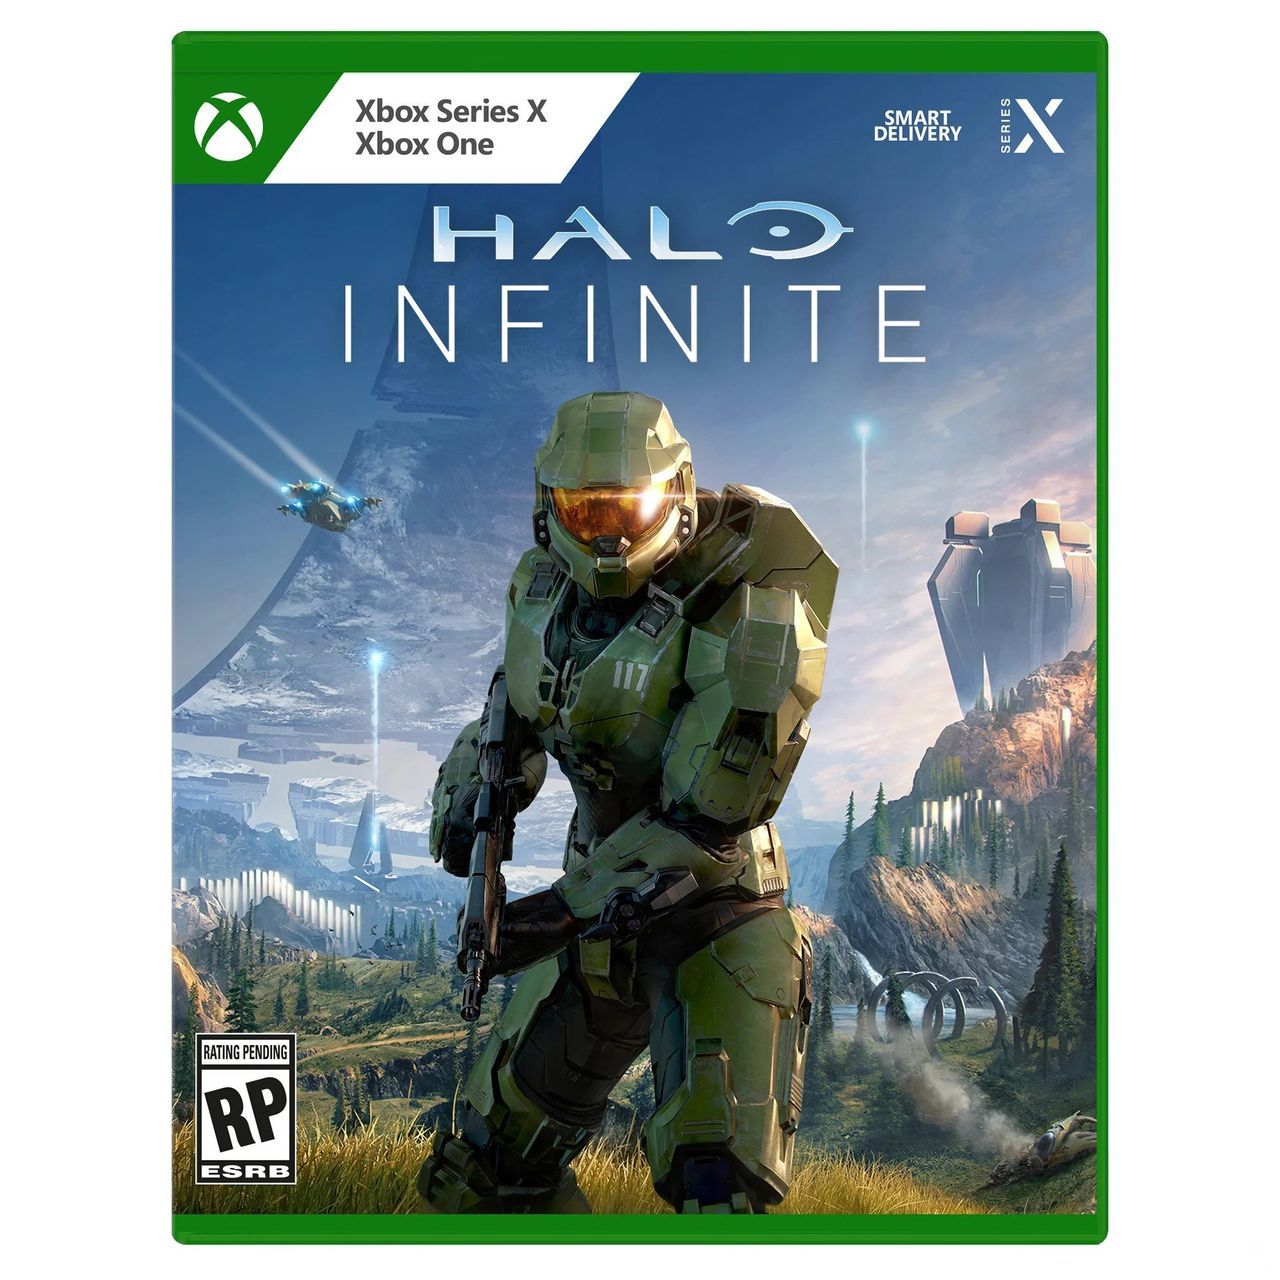 Xbox cambiará el diseño de la carátula de los juegos, según imágenes de Best Buy